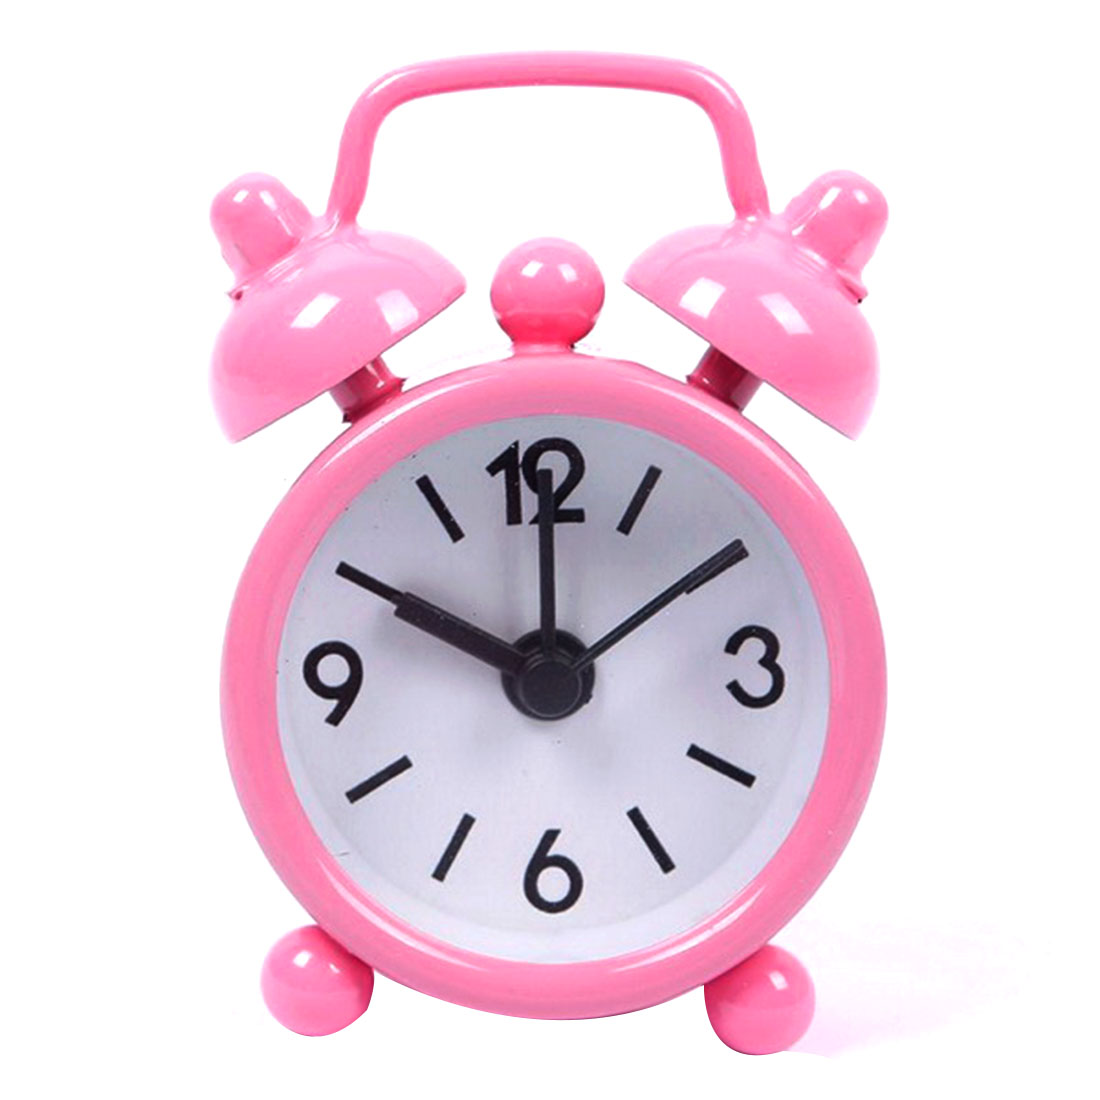 Di modo Nuova Casa Esterno Portatile Sveglio Bello Del Fumetto Quadrante Numero Tondo Desk Alarm Clock Mini: Colore rosa